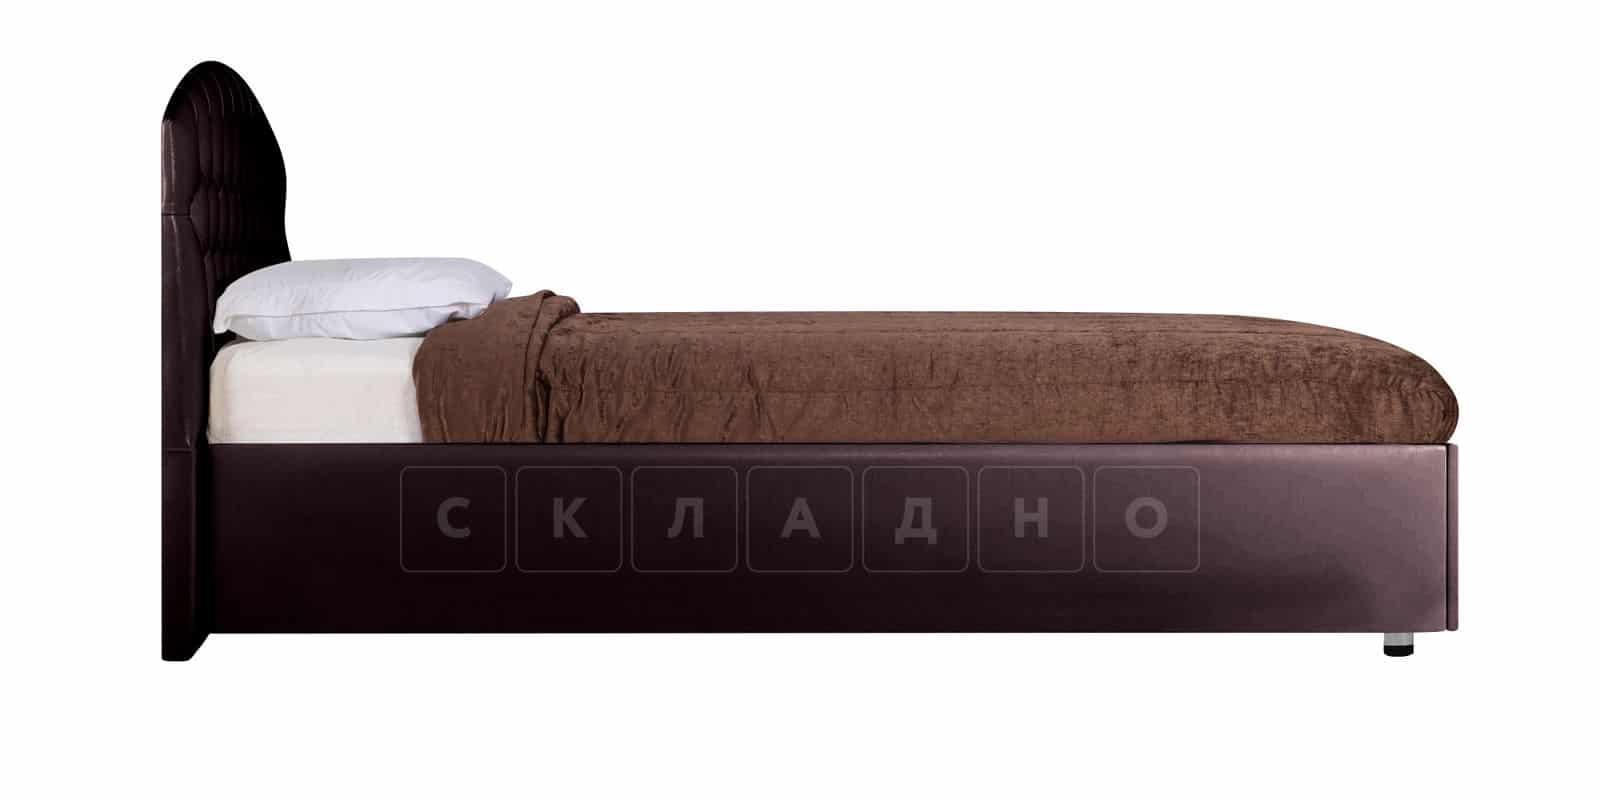 Мягкая кровать Малибу 160 см экокожа шоколадного цвета вариант 1-2 фото 4 | интернет-магазин Складно